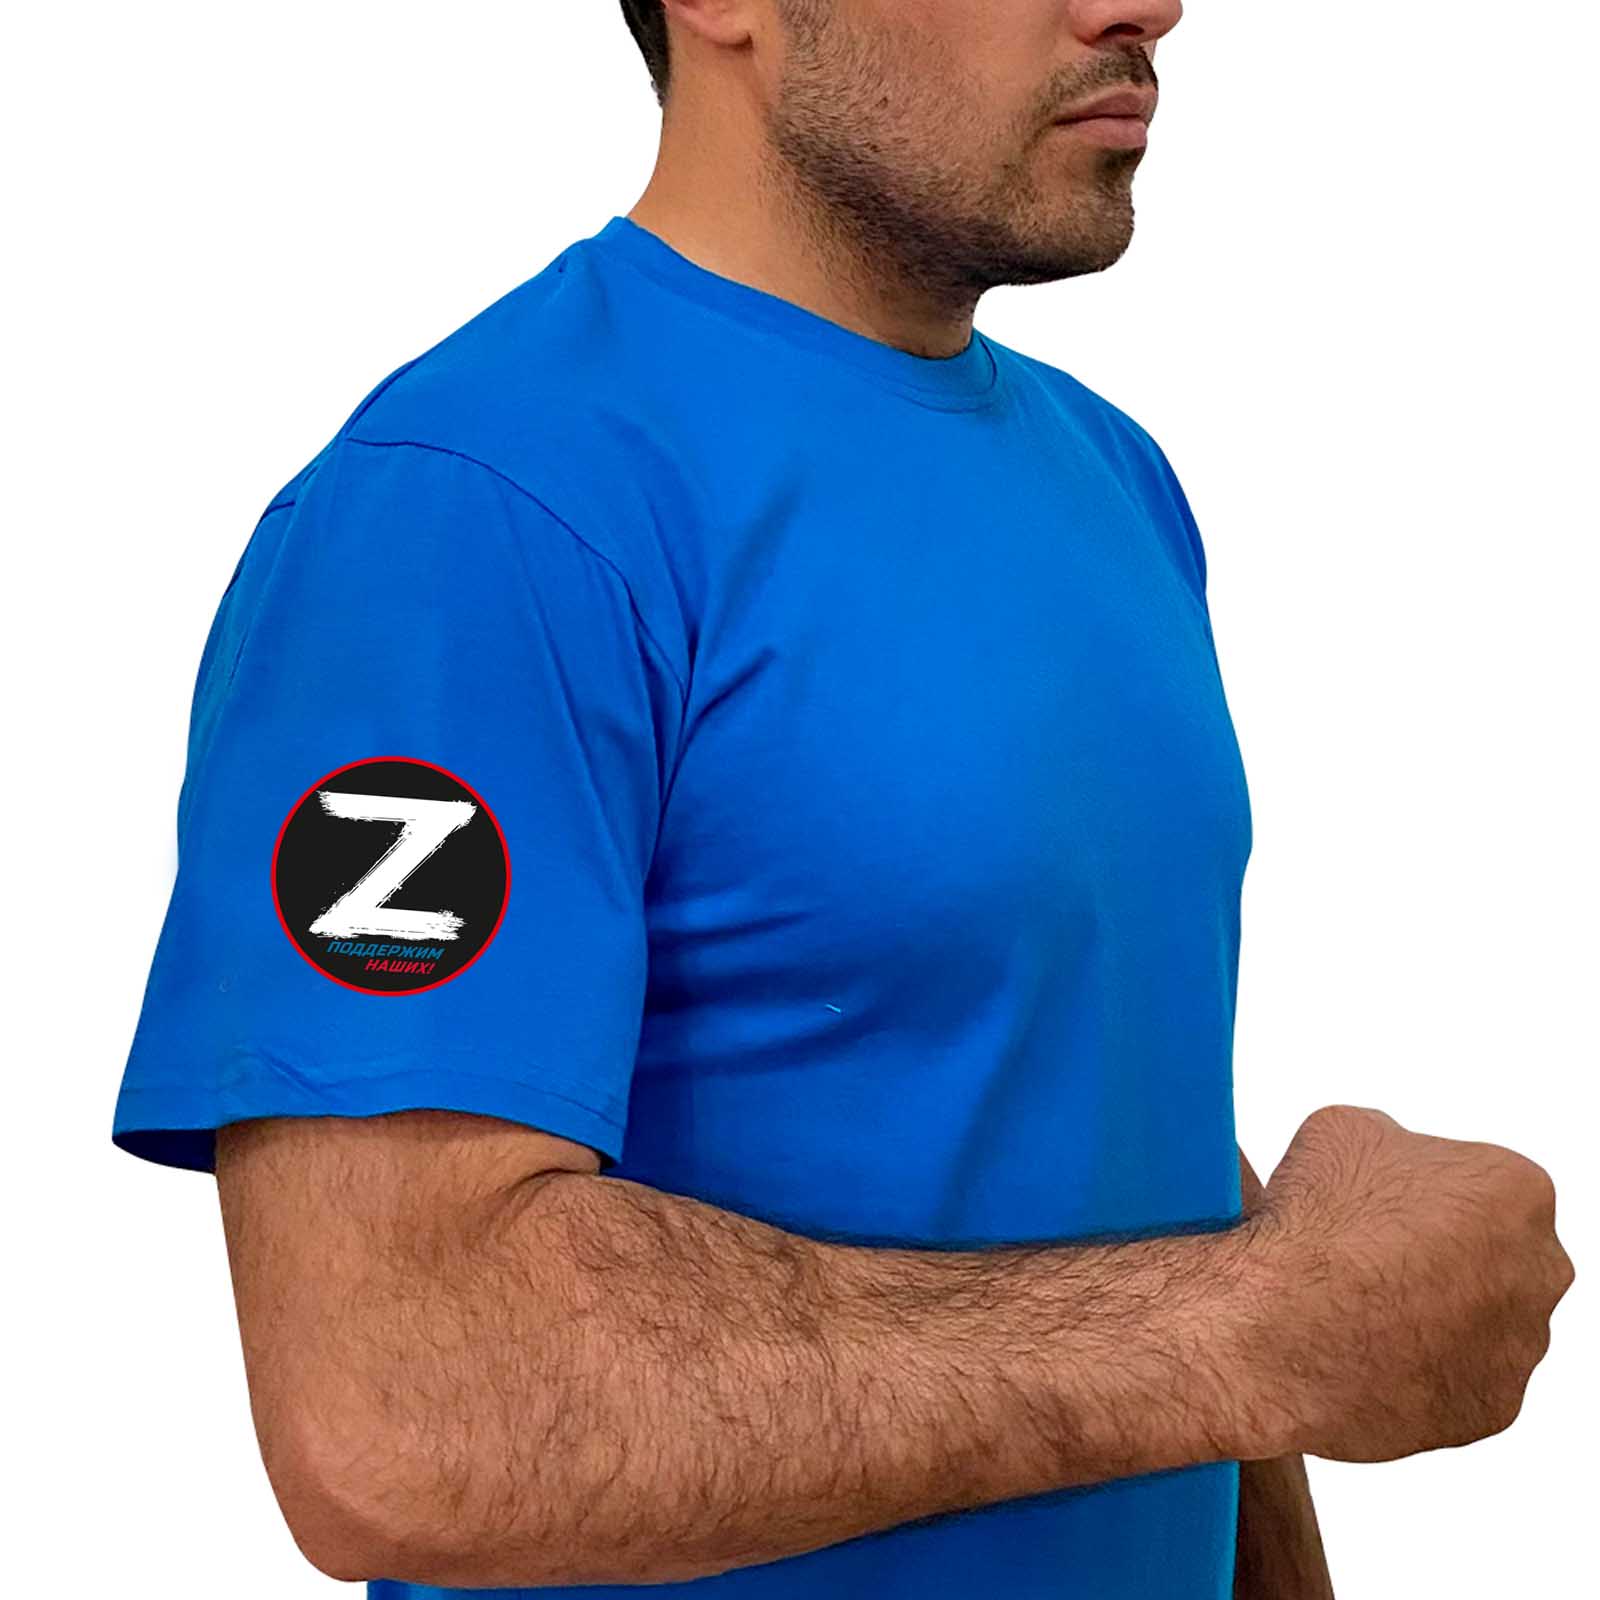 Купить голубую трикотажную футболку с литерой Z выгодно